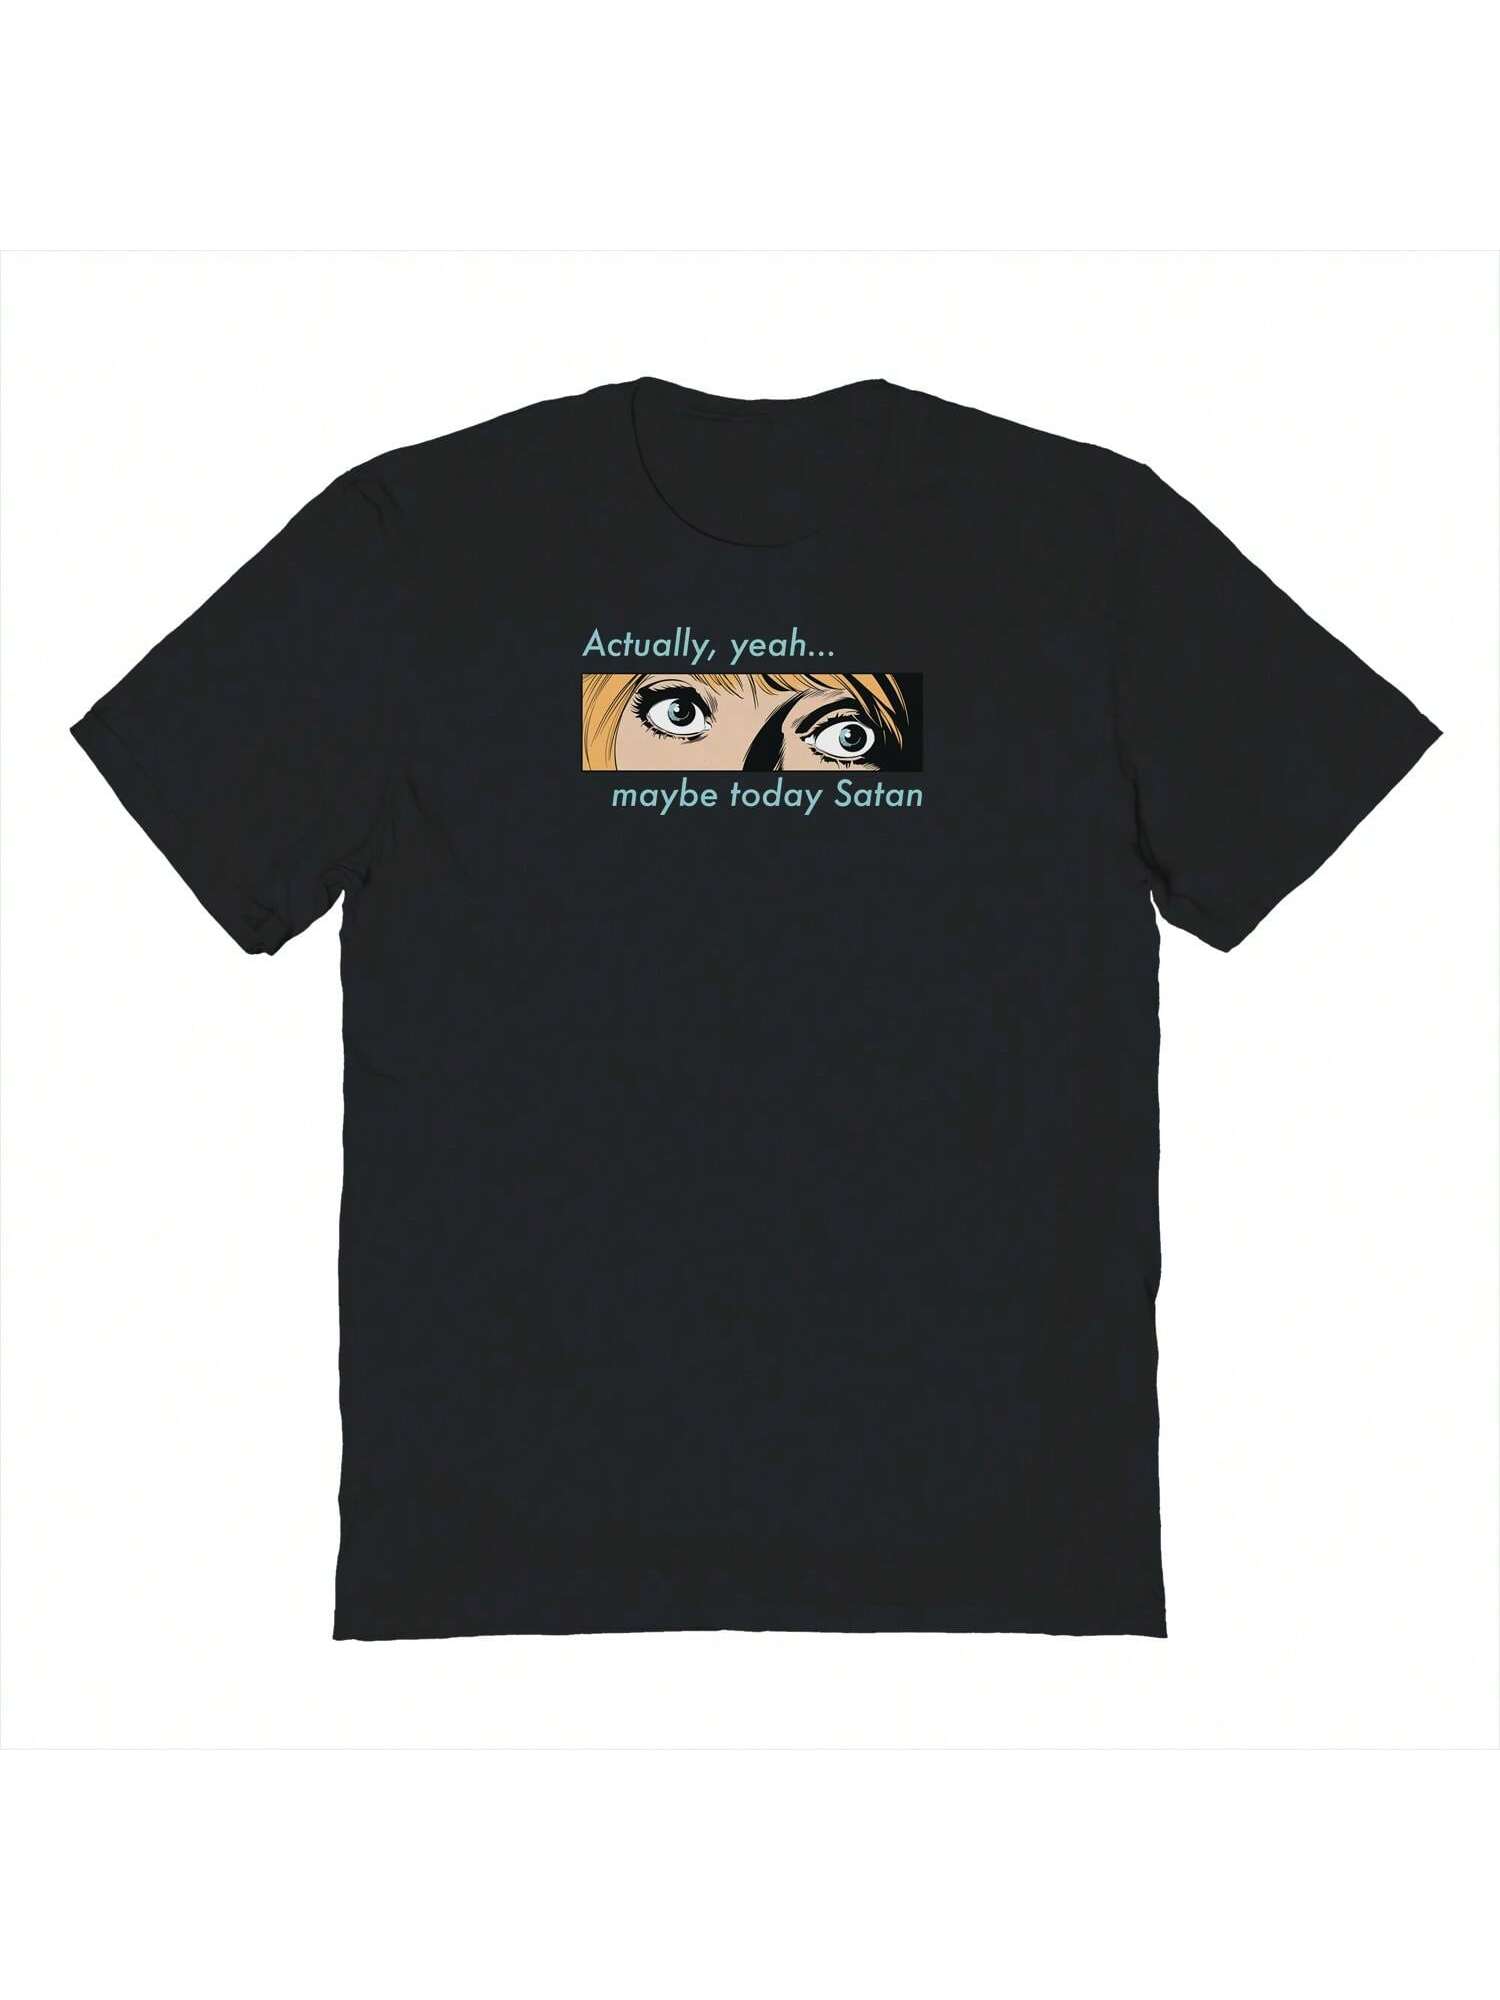 Хлопковая футболка унисекс с короткими рукавами и рисунком Pop Creature Фактически, черный